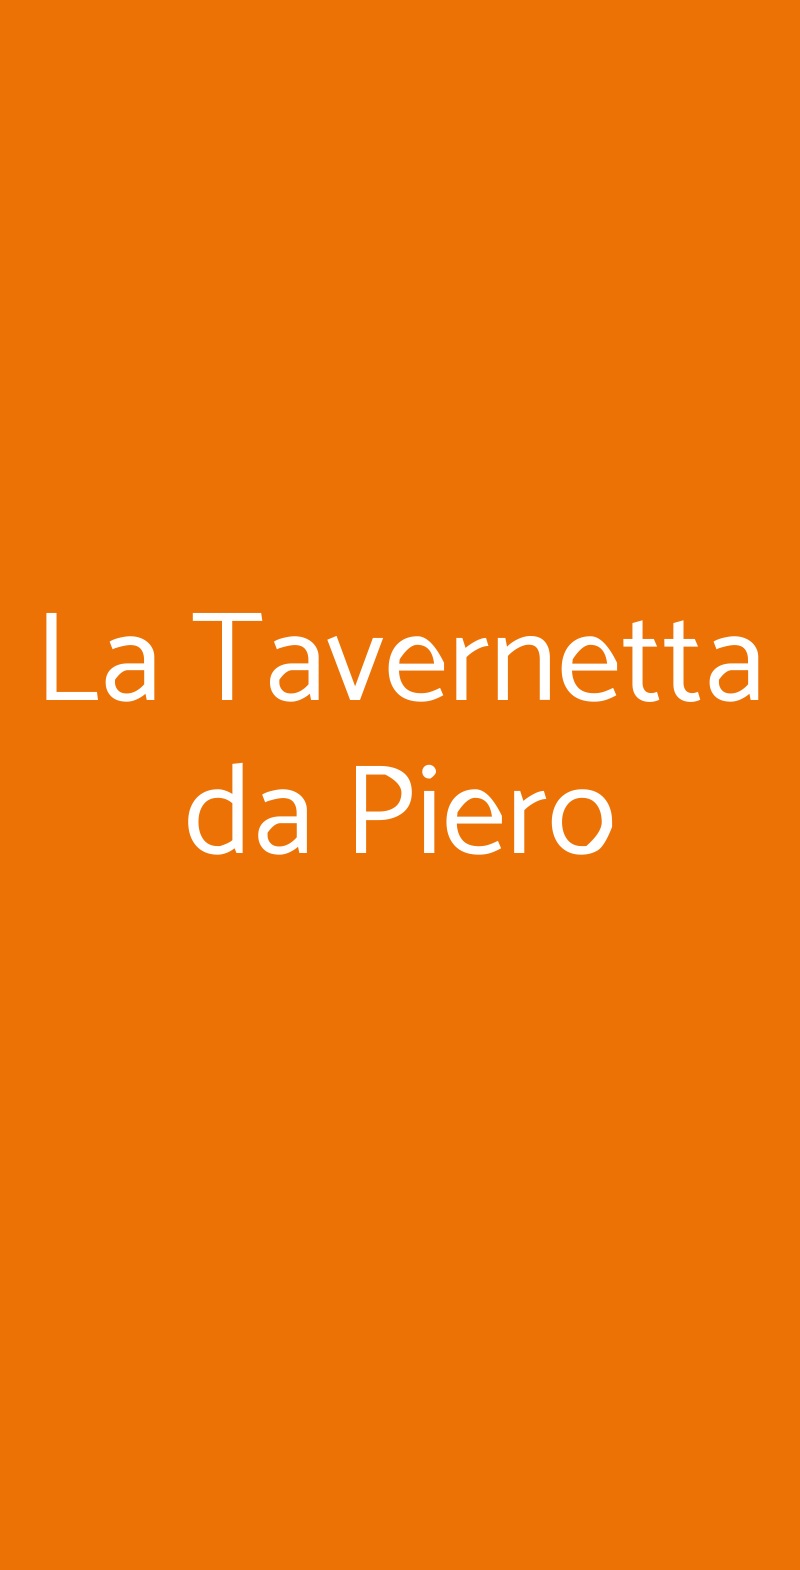 La Tavernetta da Piero Siracusa menù 1 pagina